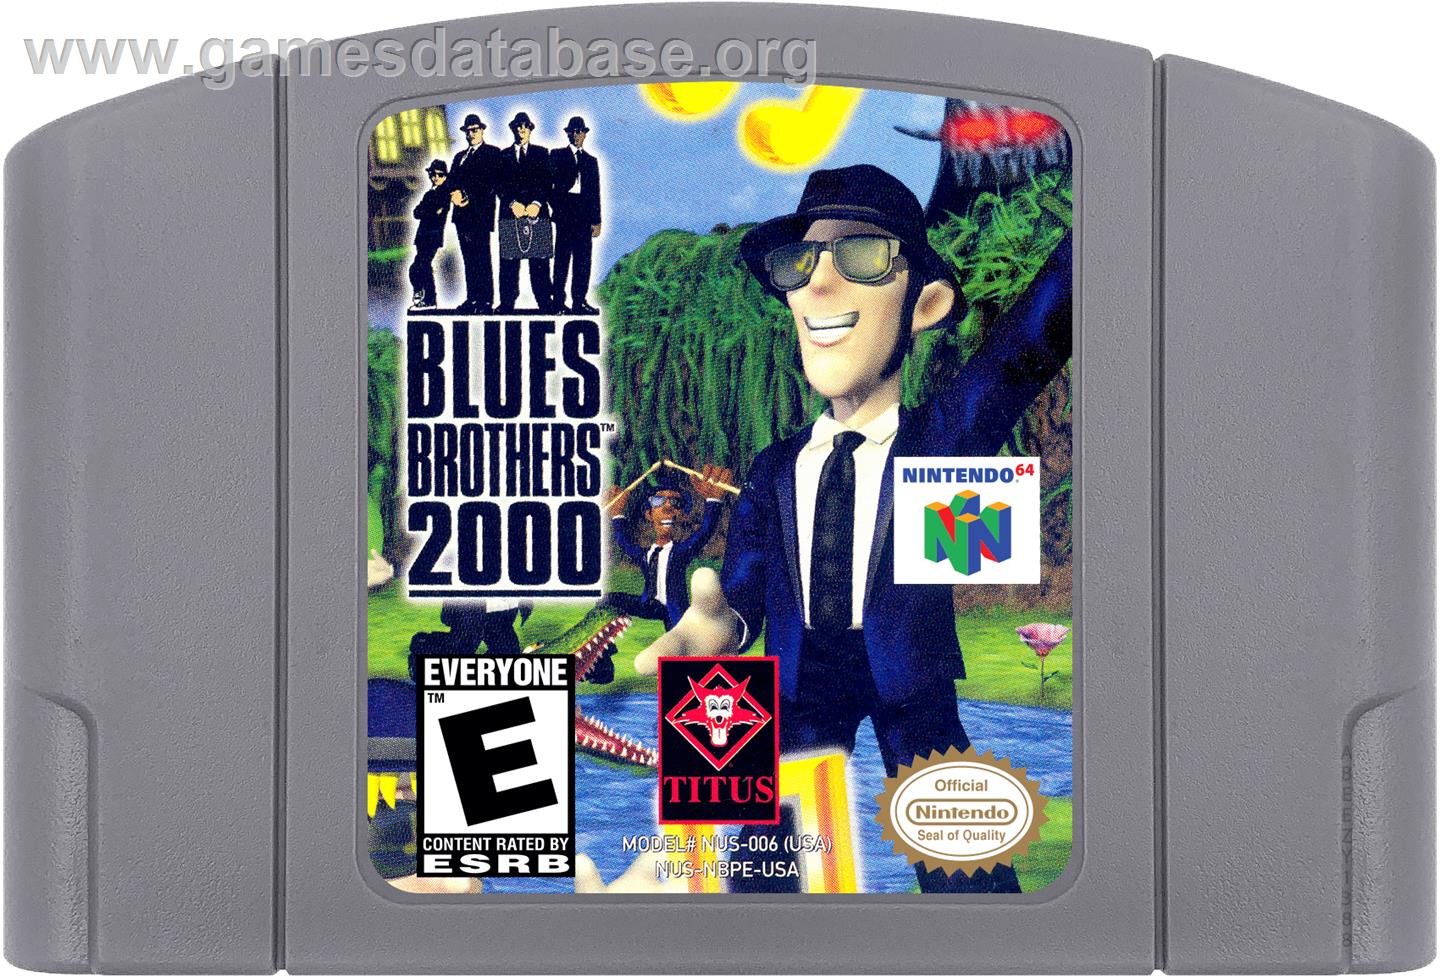 Blues Brothers 2000 - Nintendo N64 - Artwork - Cartridge